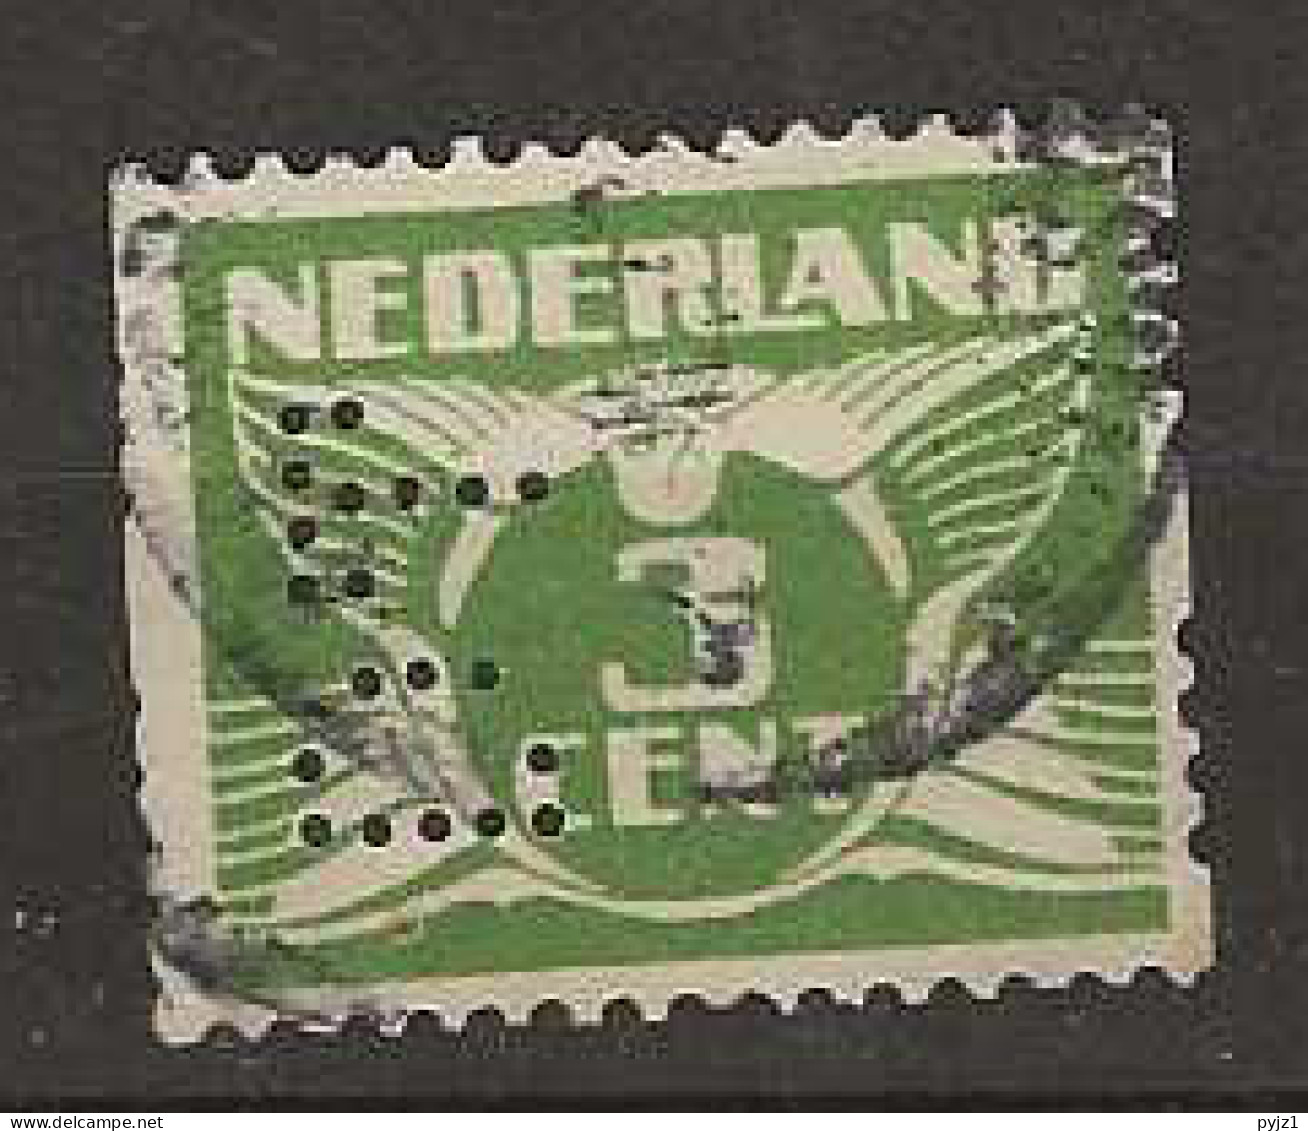 1925 USED Nederland NVPH R4 Zonder Watermerk Perfin - Used Stamps